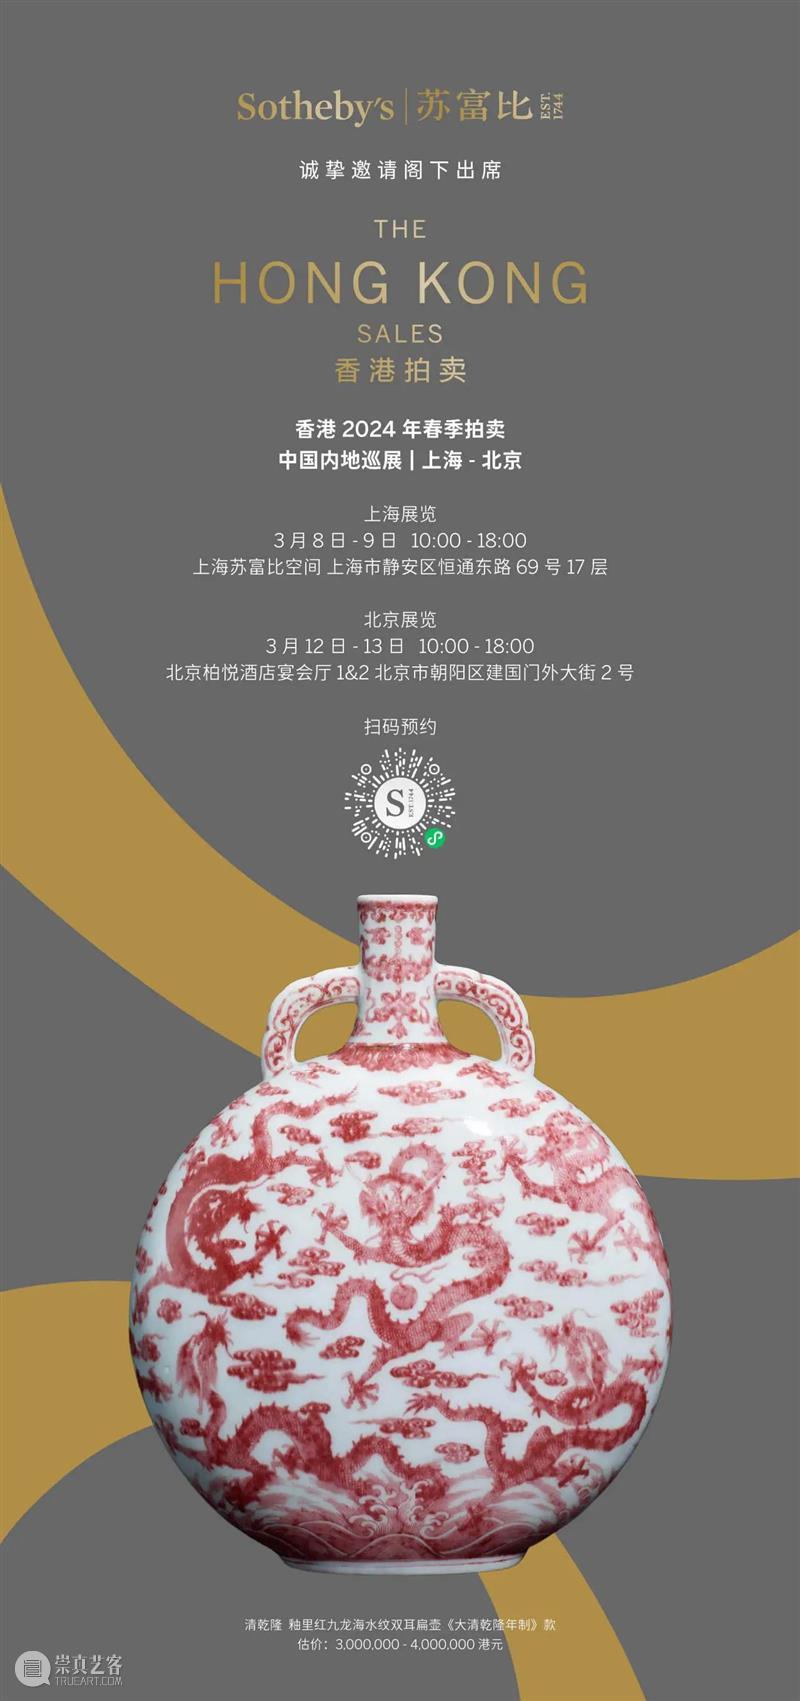 苏富比 2024 年香港拍卖  中国内地巡展开幕在即 崇真艺客